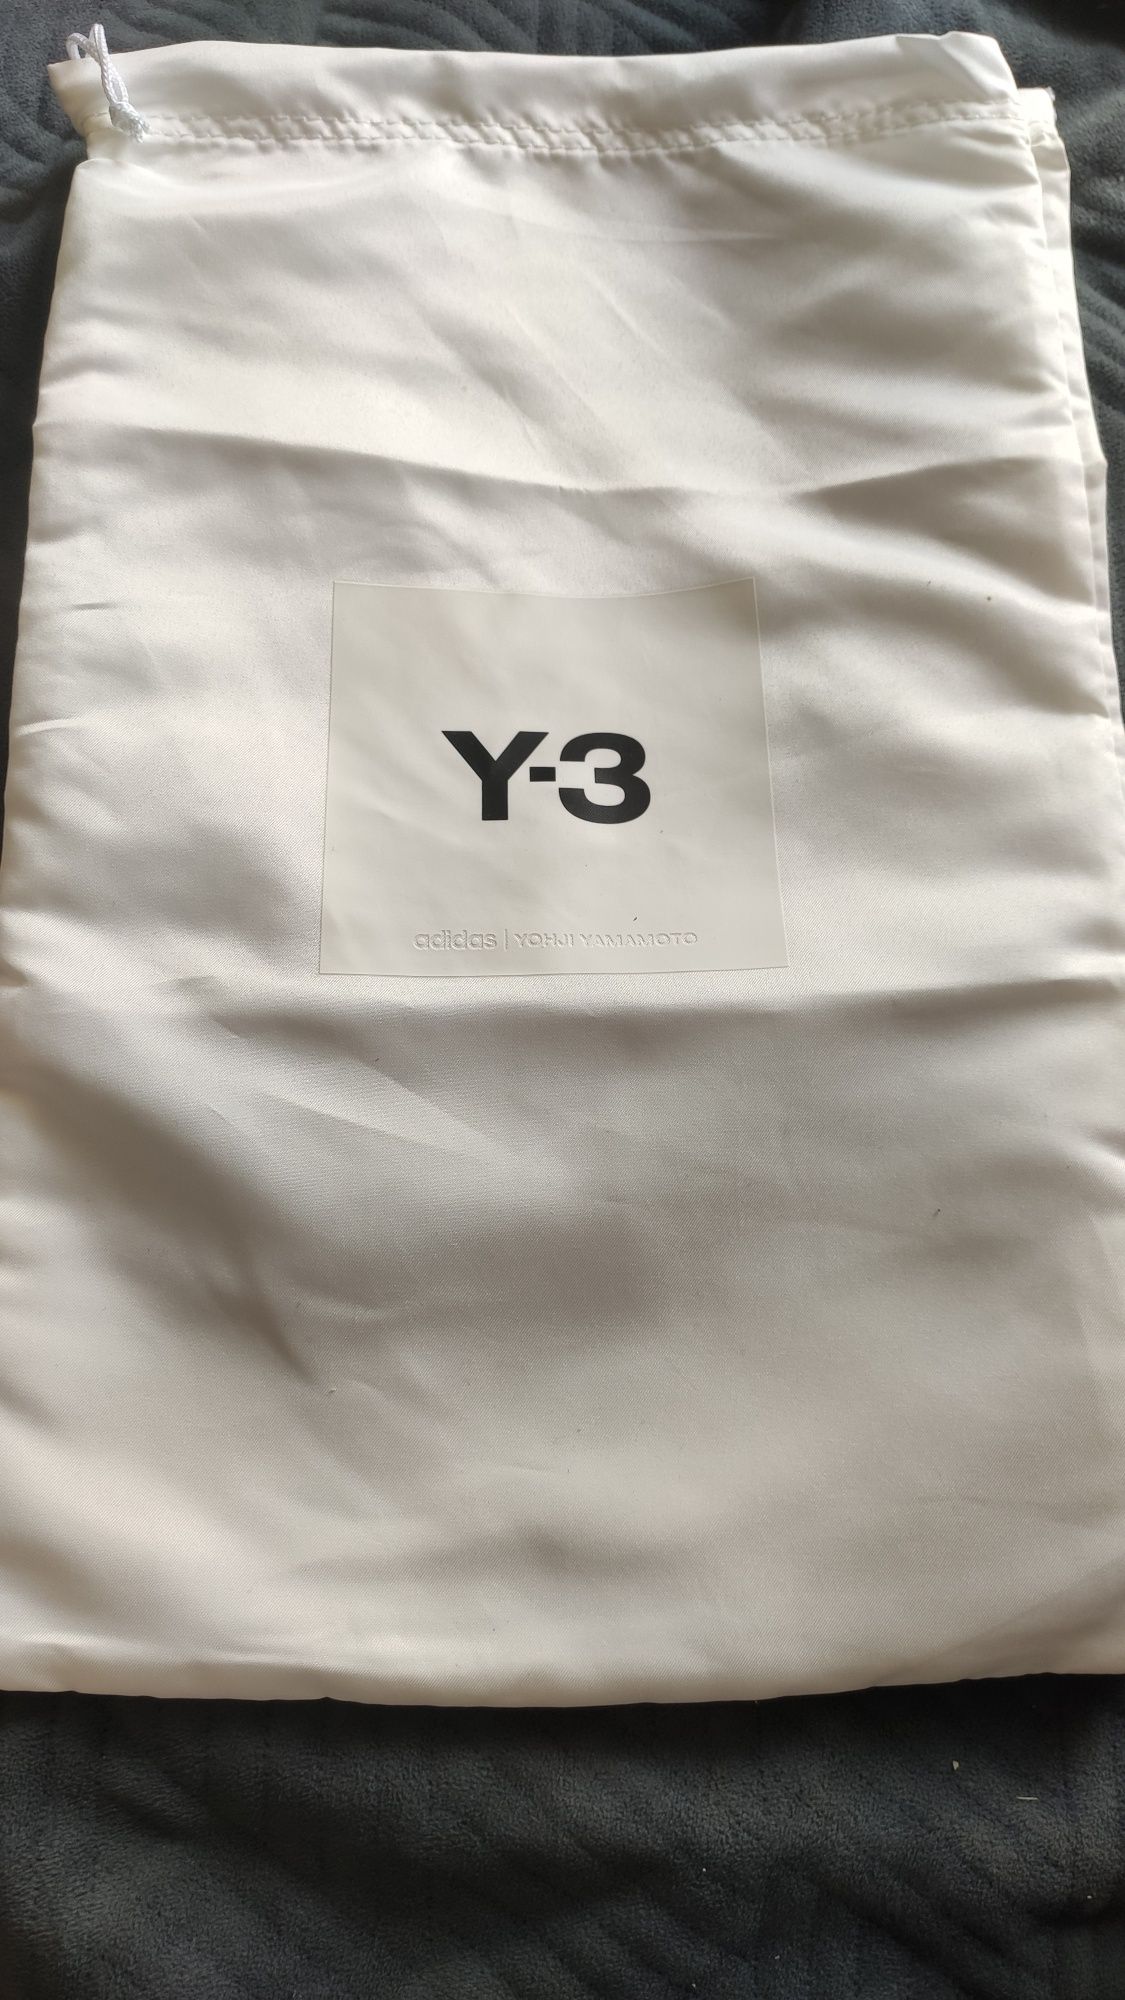 Чоловічі жіночі тапки Adidas Yohji Yamamoto Y-3.